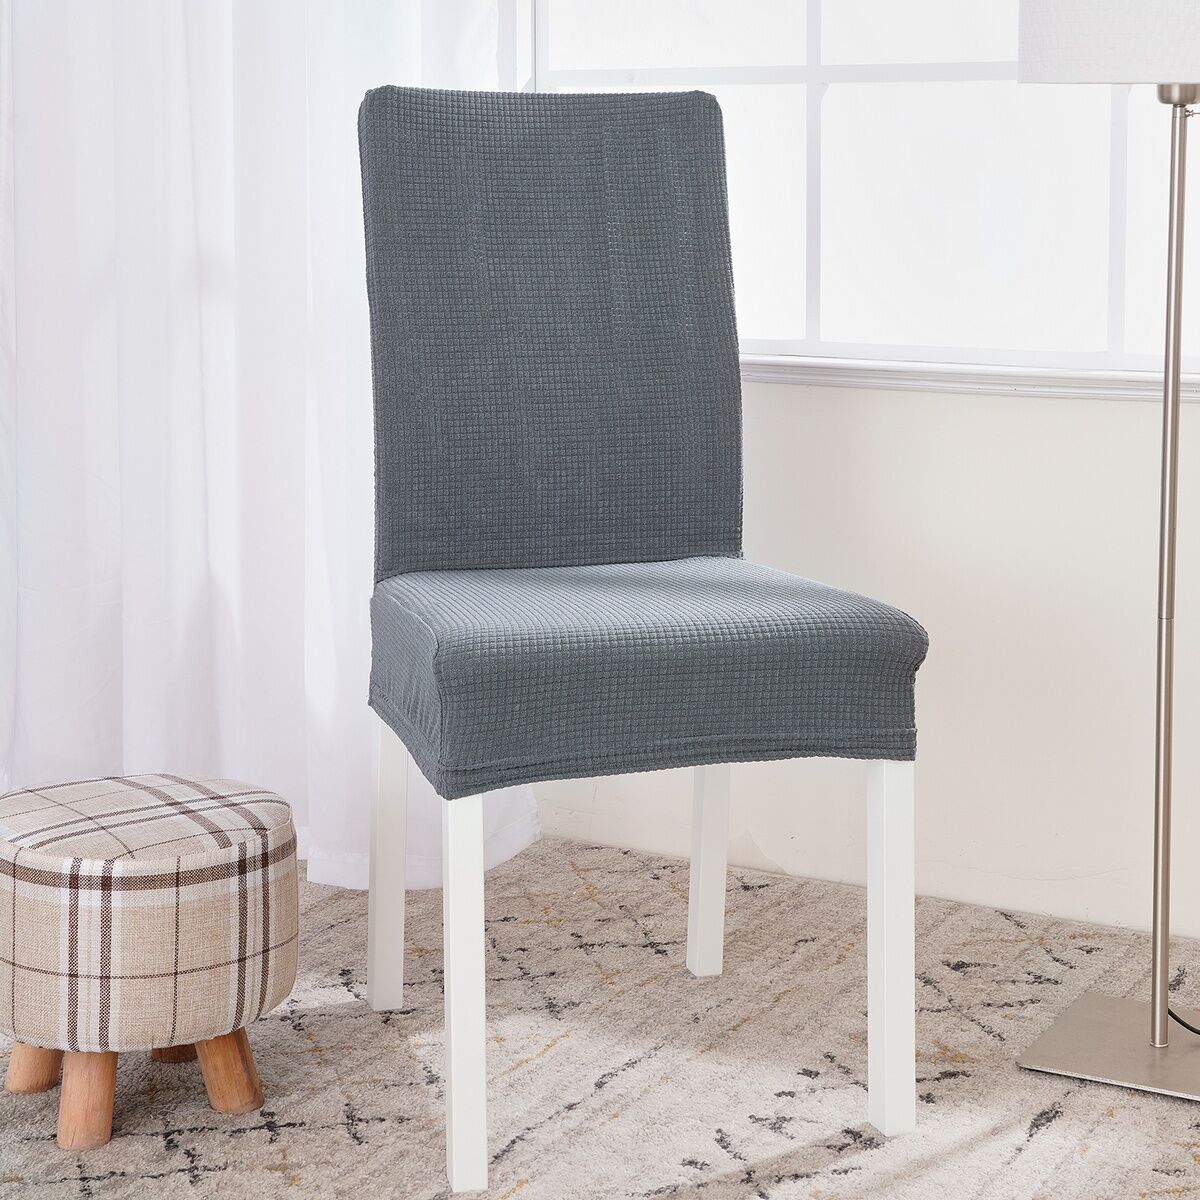 4Home Elastyczny pokrowiec na krzesło Magic clean jasnoszary, 45 - 50 cm, komplet 2 szt.